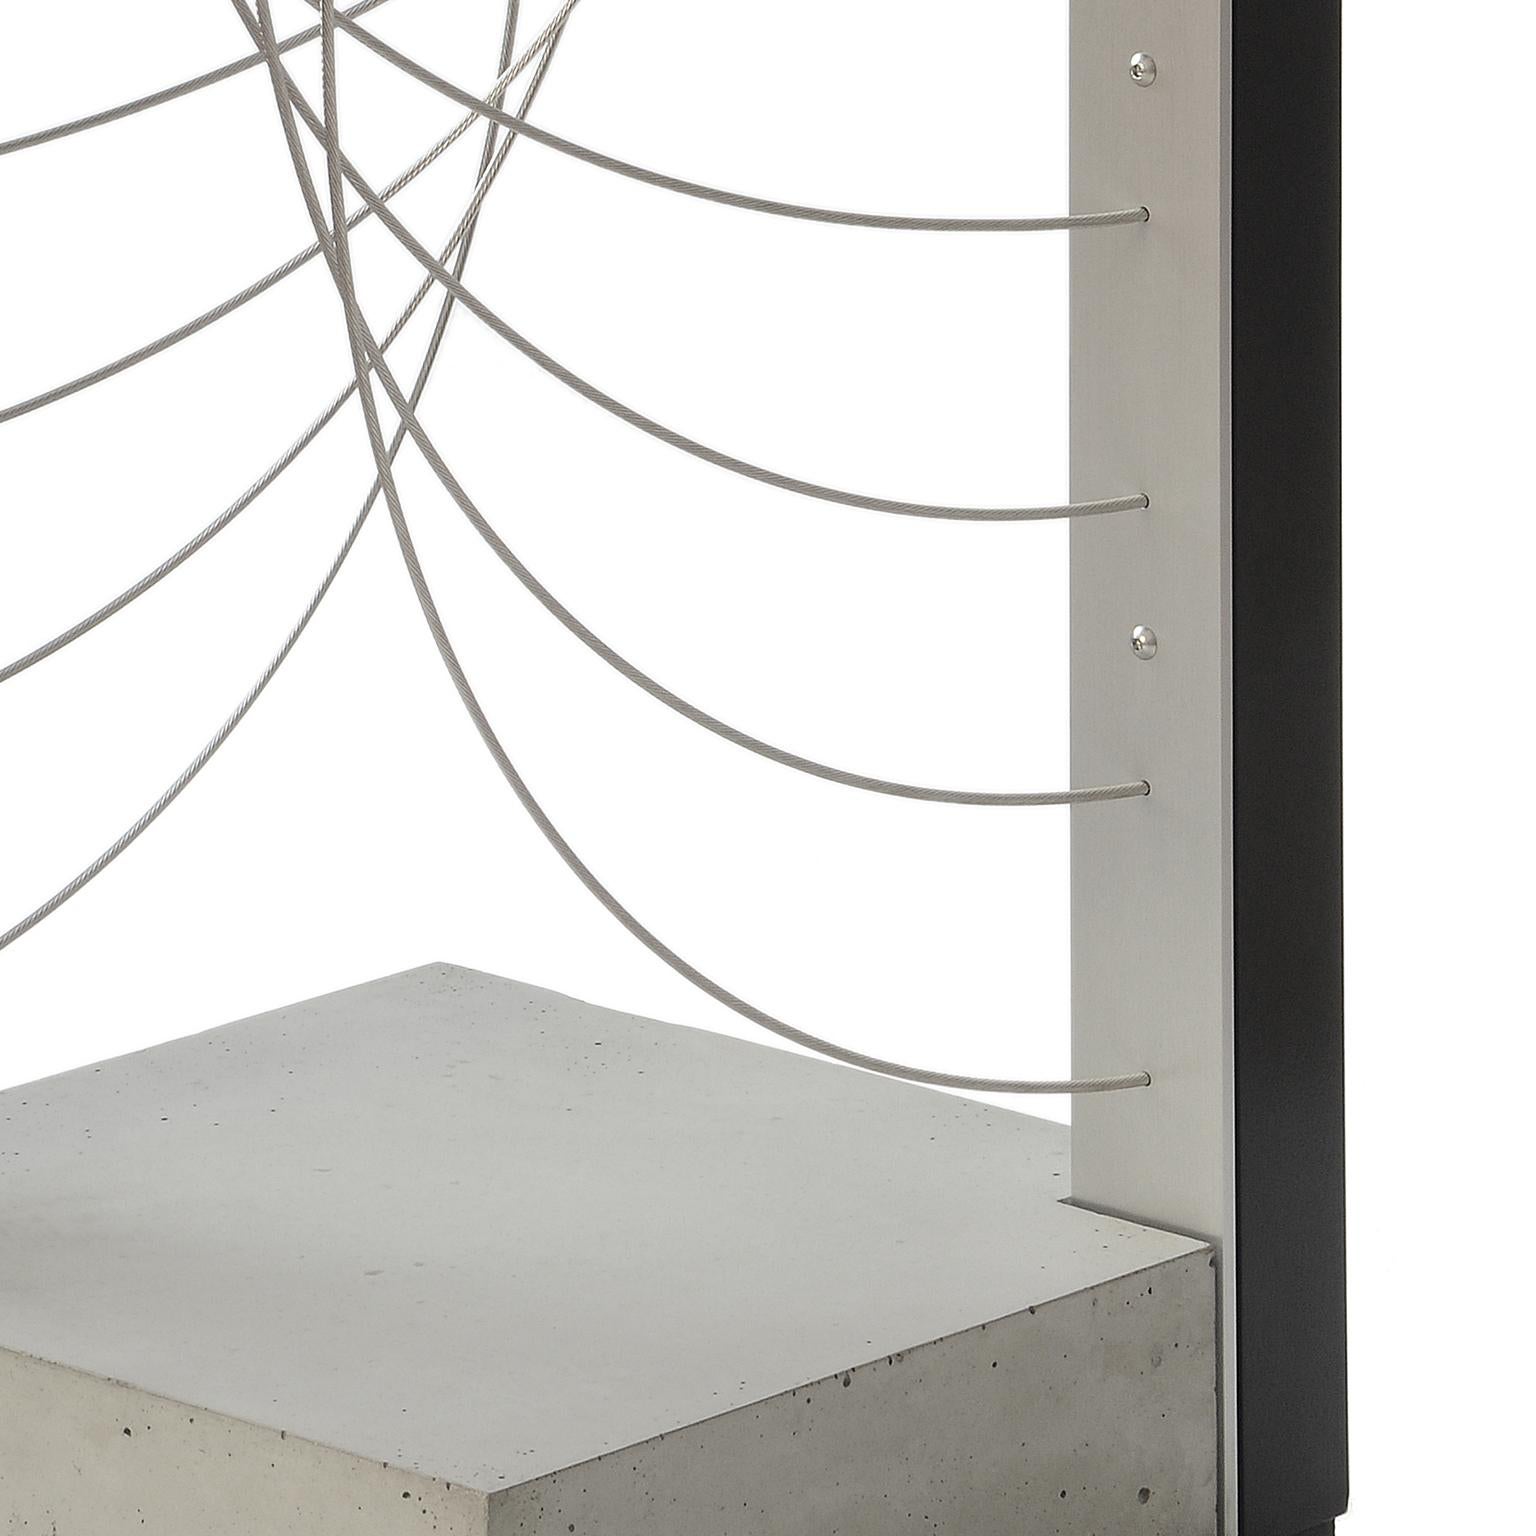 La plus grande taille de la table Xenon disponible. Il a un sommet carré de 16 pouces et mesure 40 pouces de haut. Ce piédestal présente des câbles en acier inoxydable tordus en une série de courbes agréables. Il a une présence sculpturale pour